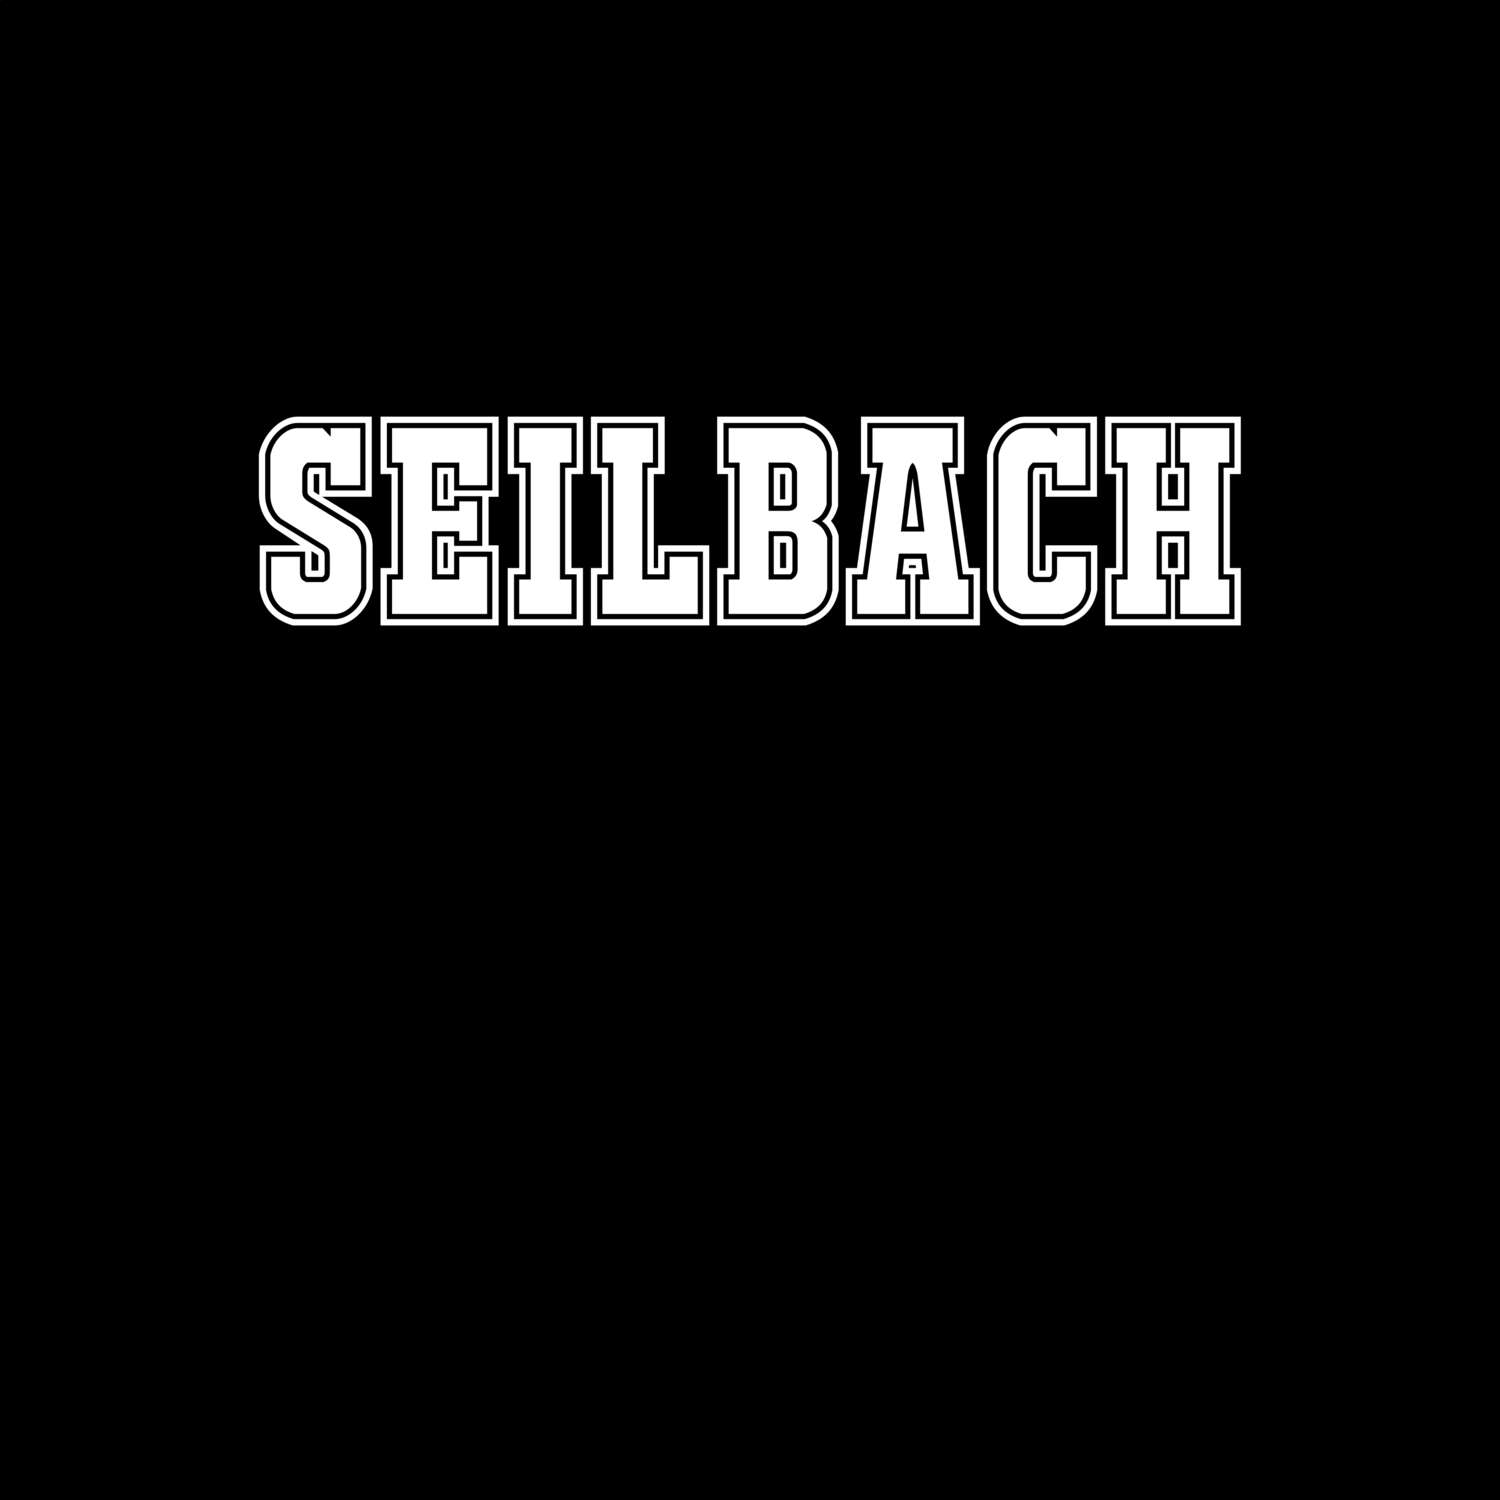 Seilbach T-Shirt »Classic«